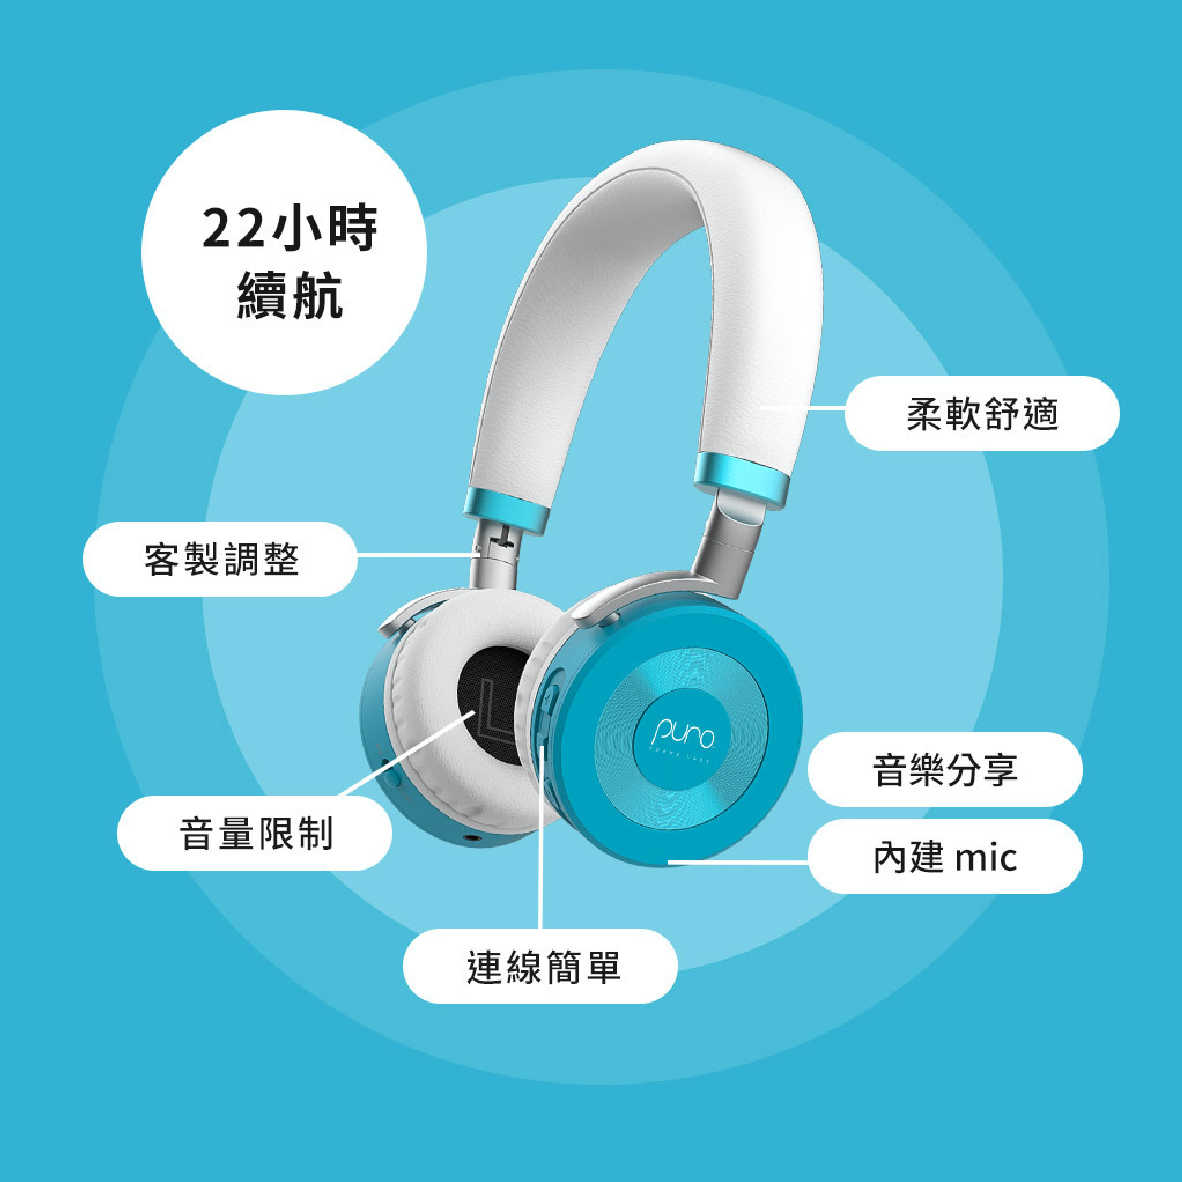 Puro JuniorJams 綠色 內建麥克風 22hr續航 音量控制 兒童耳機 耳罩式耳機 | 金曲音響